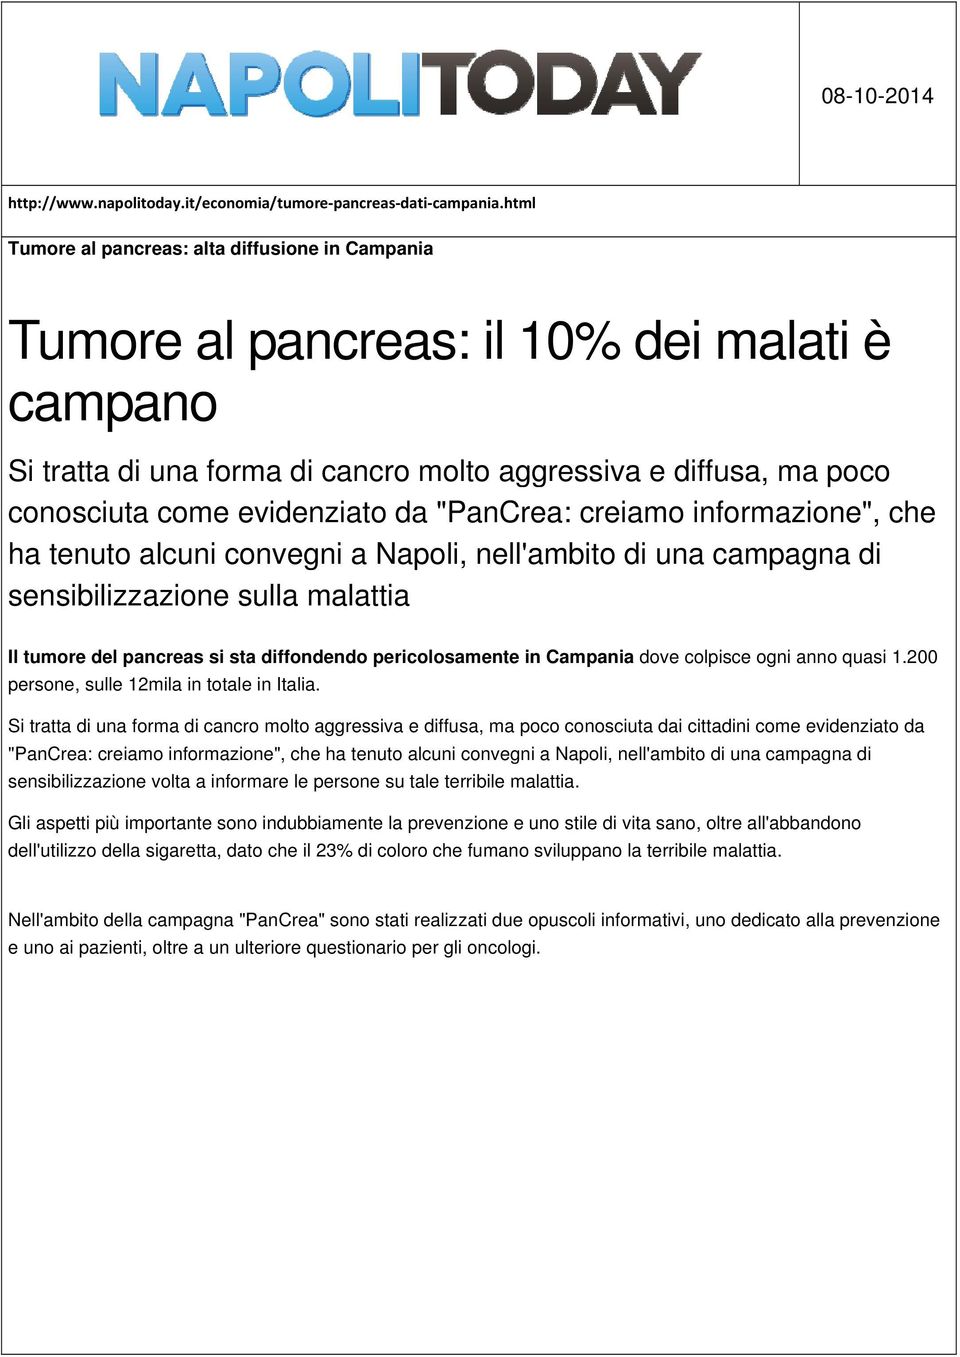 da "PanCrea: creiamo informazione", che ha tenuto alcuni convegni a Napoli, nell'ambito di una campagna di sensibilizzazione sulla malattia Il tumore del pancreas si sta diffondendo pericolosamente